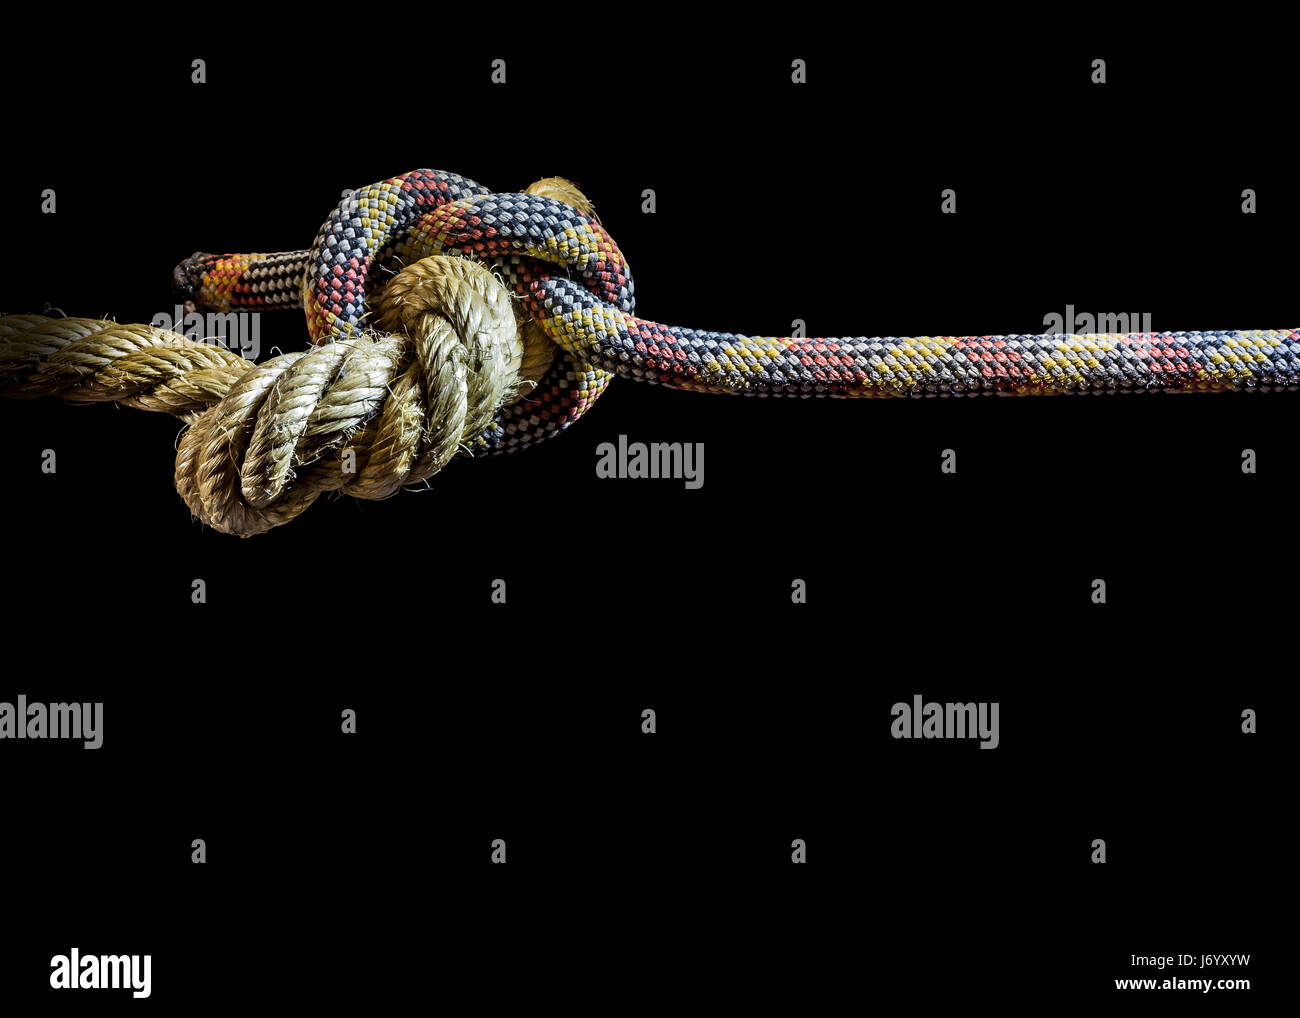 Two nested ropes symbolizing evolution Stock Photo